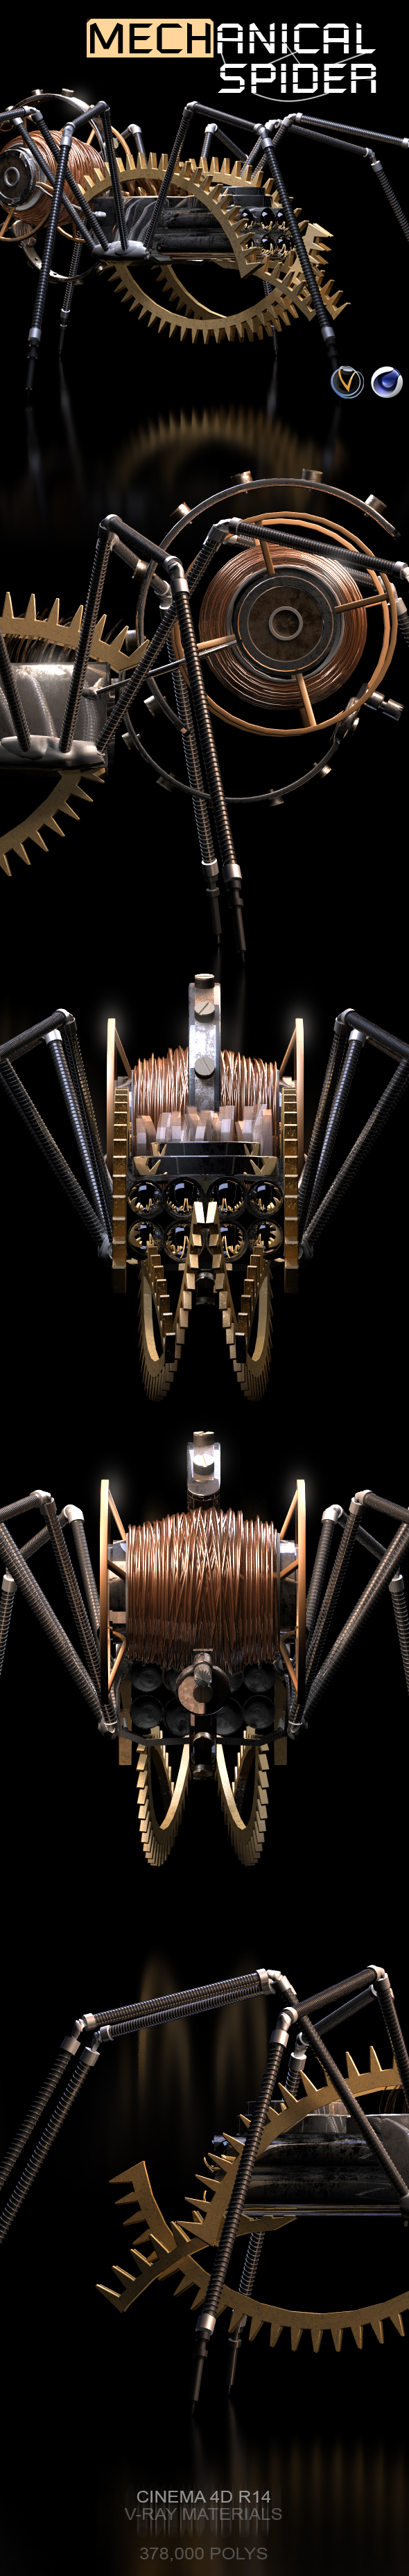 Mechanical Spider 3D - 3Docean 16413371